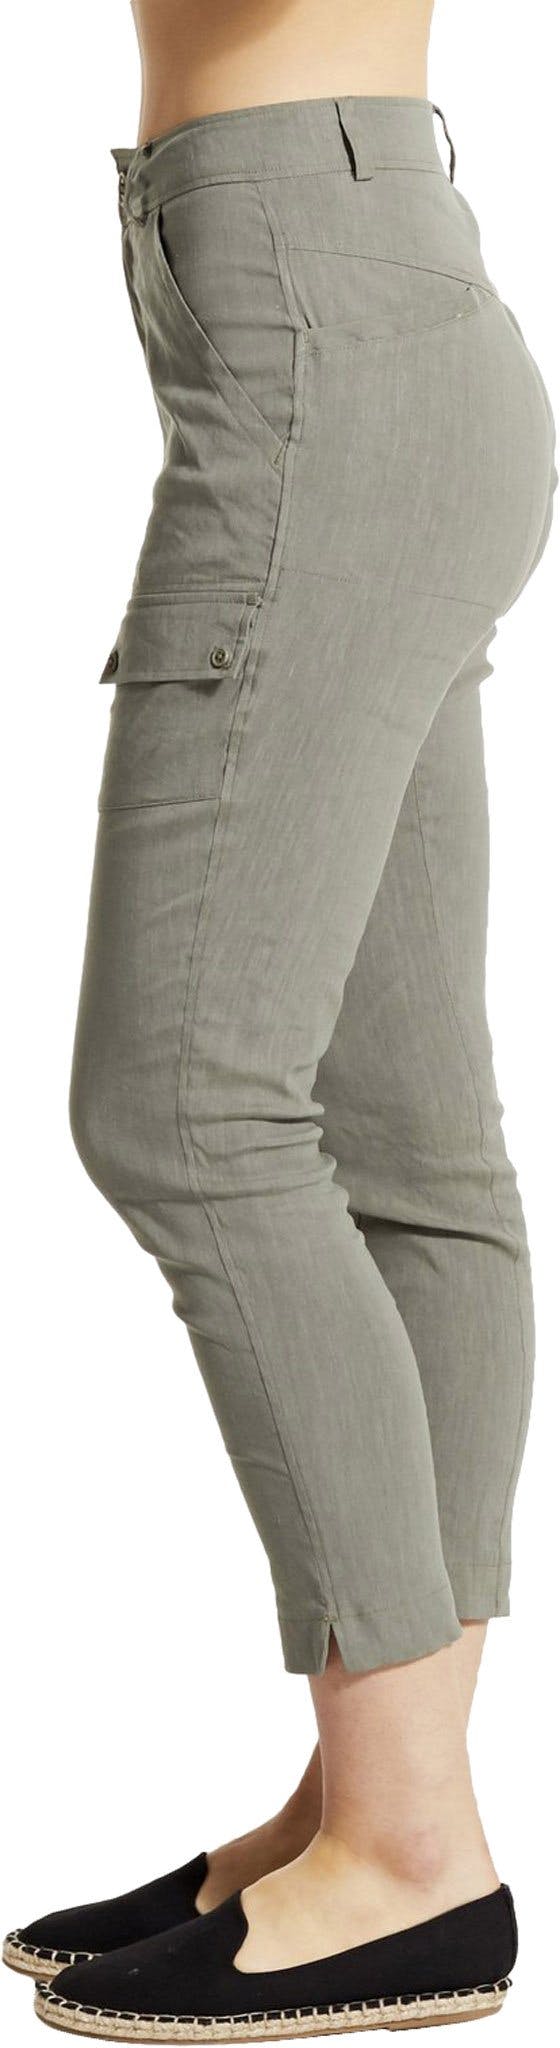 Numéro de l'image de la galerie de produits 2 pour le produit Pantalon MAT - Femme